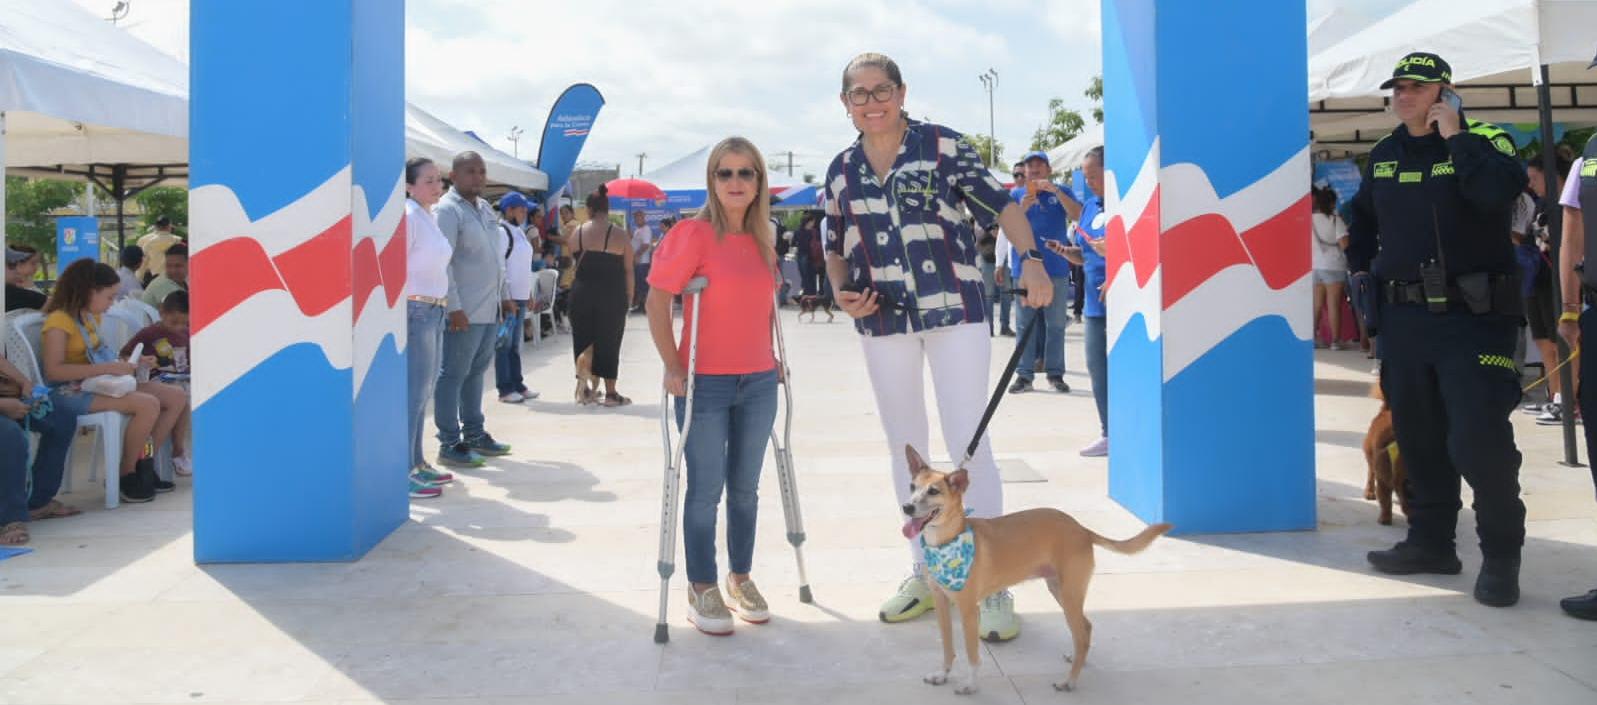 La gobernadora Elsa Noguera y la secretaria de Salud, Alma Solano, junto a una de las mascotas que acudió a la jornada de bienestar animal en Soledad